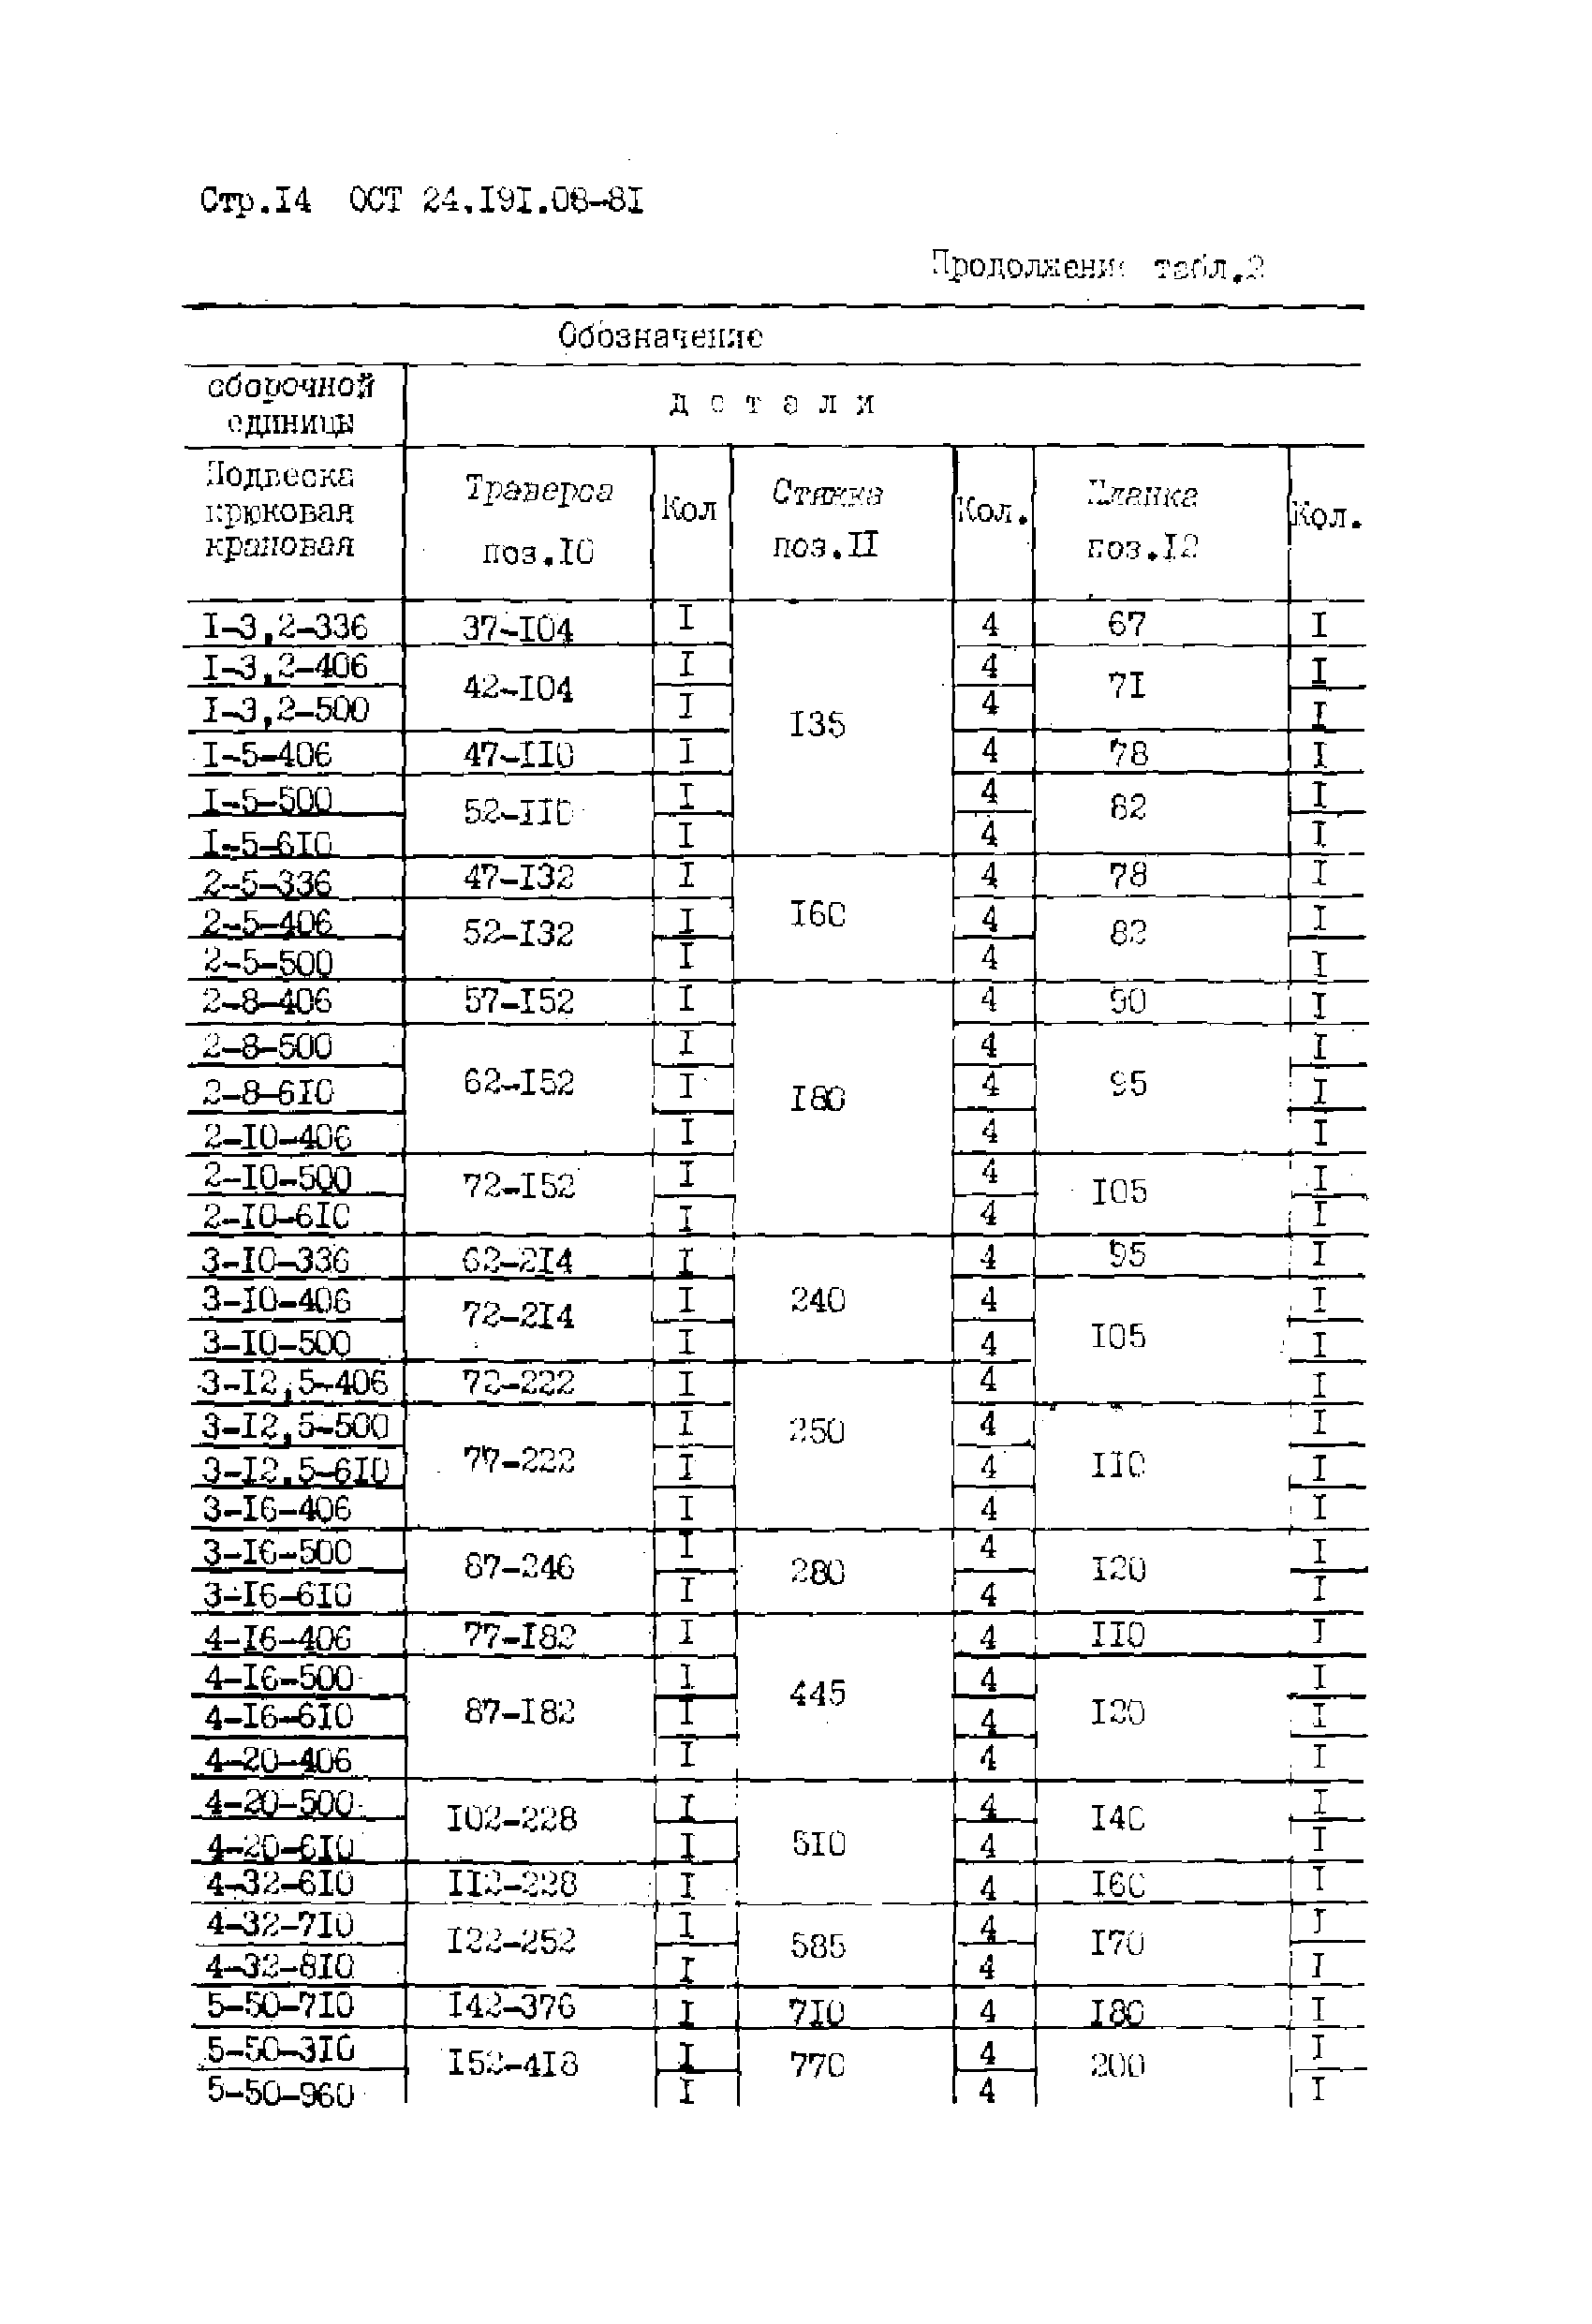 ОСТ 24.191.08-81